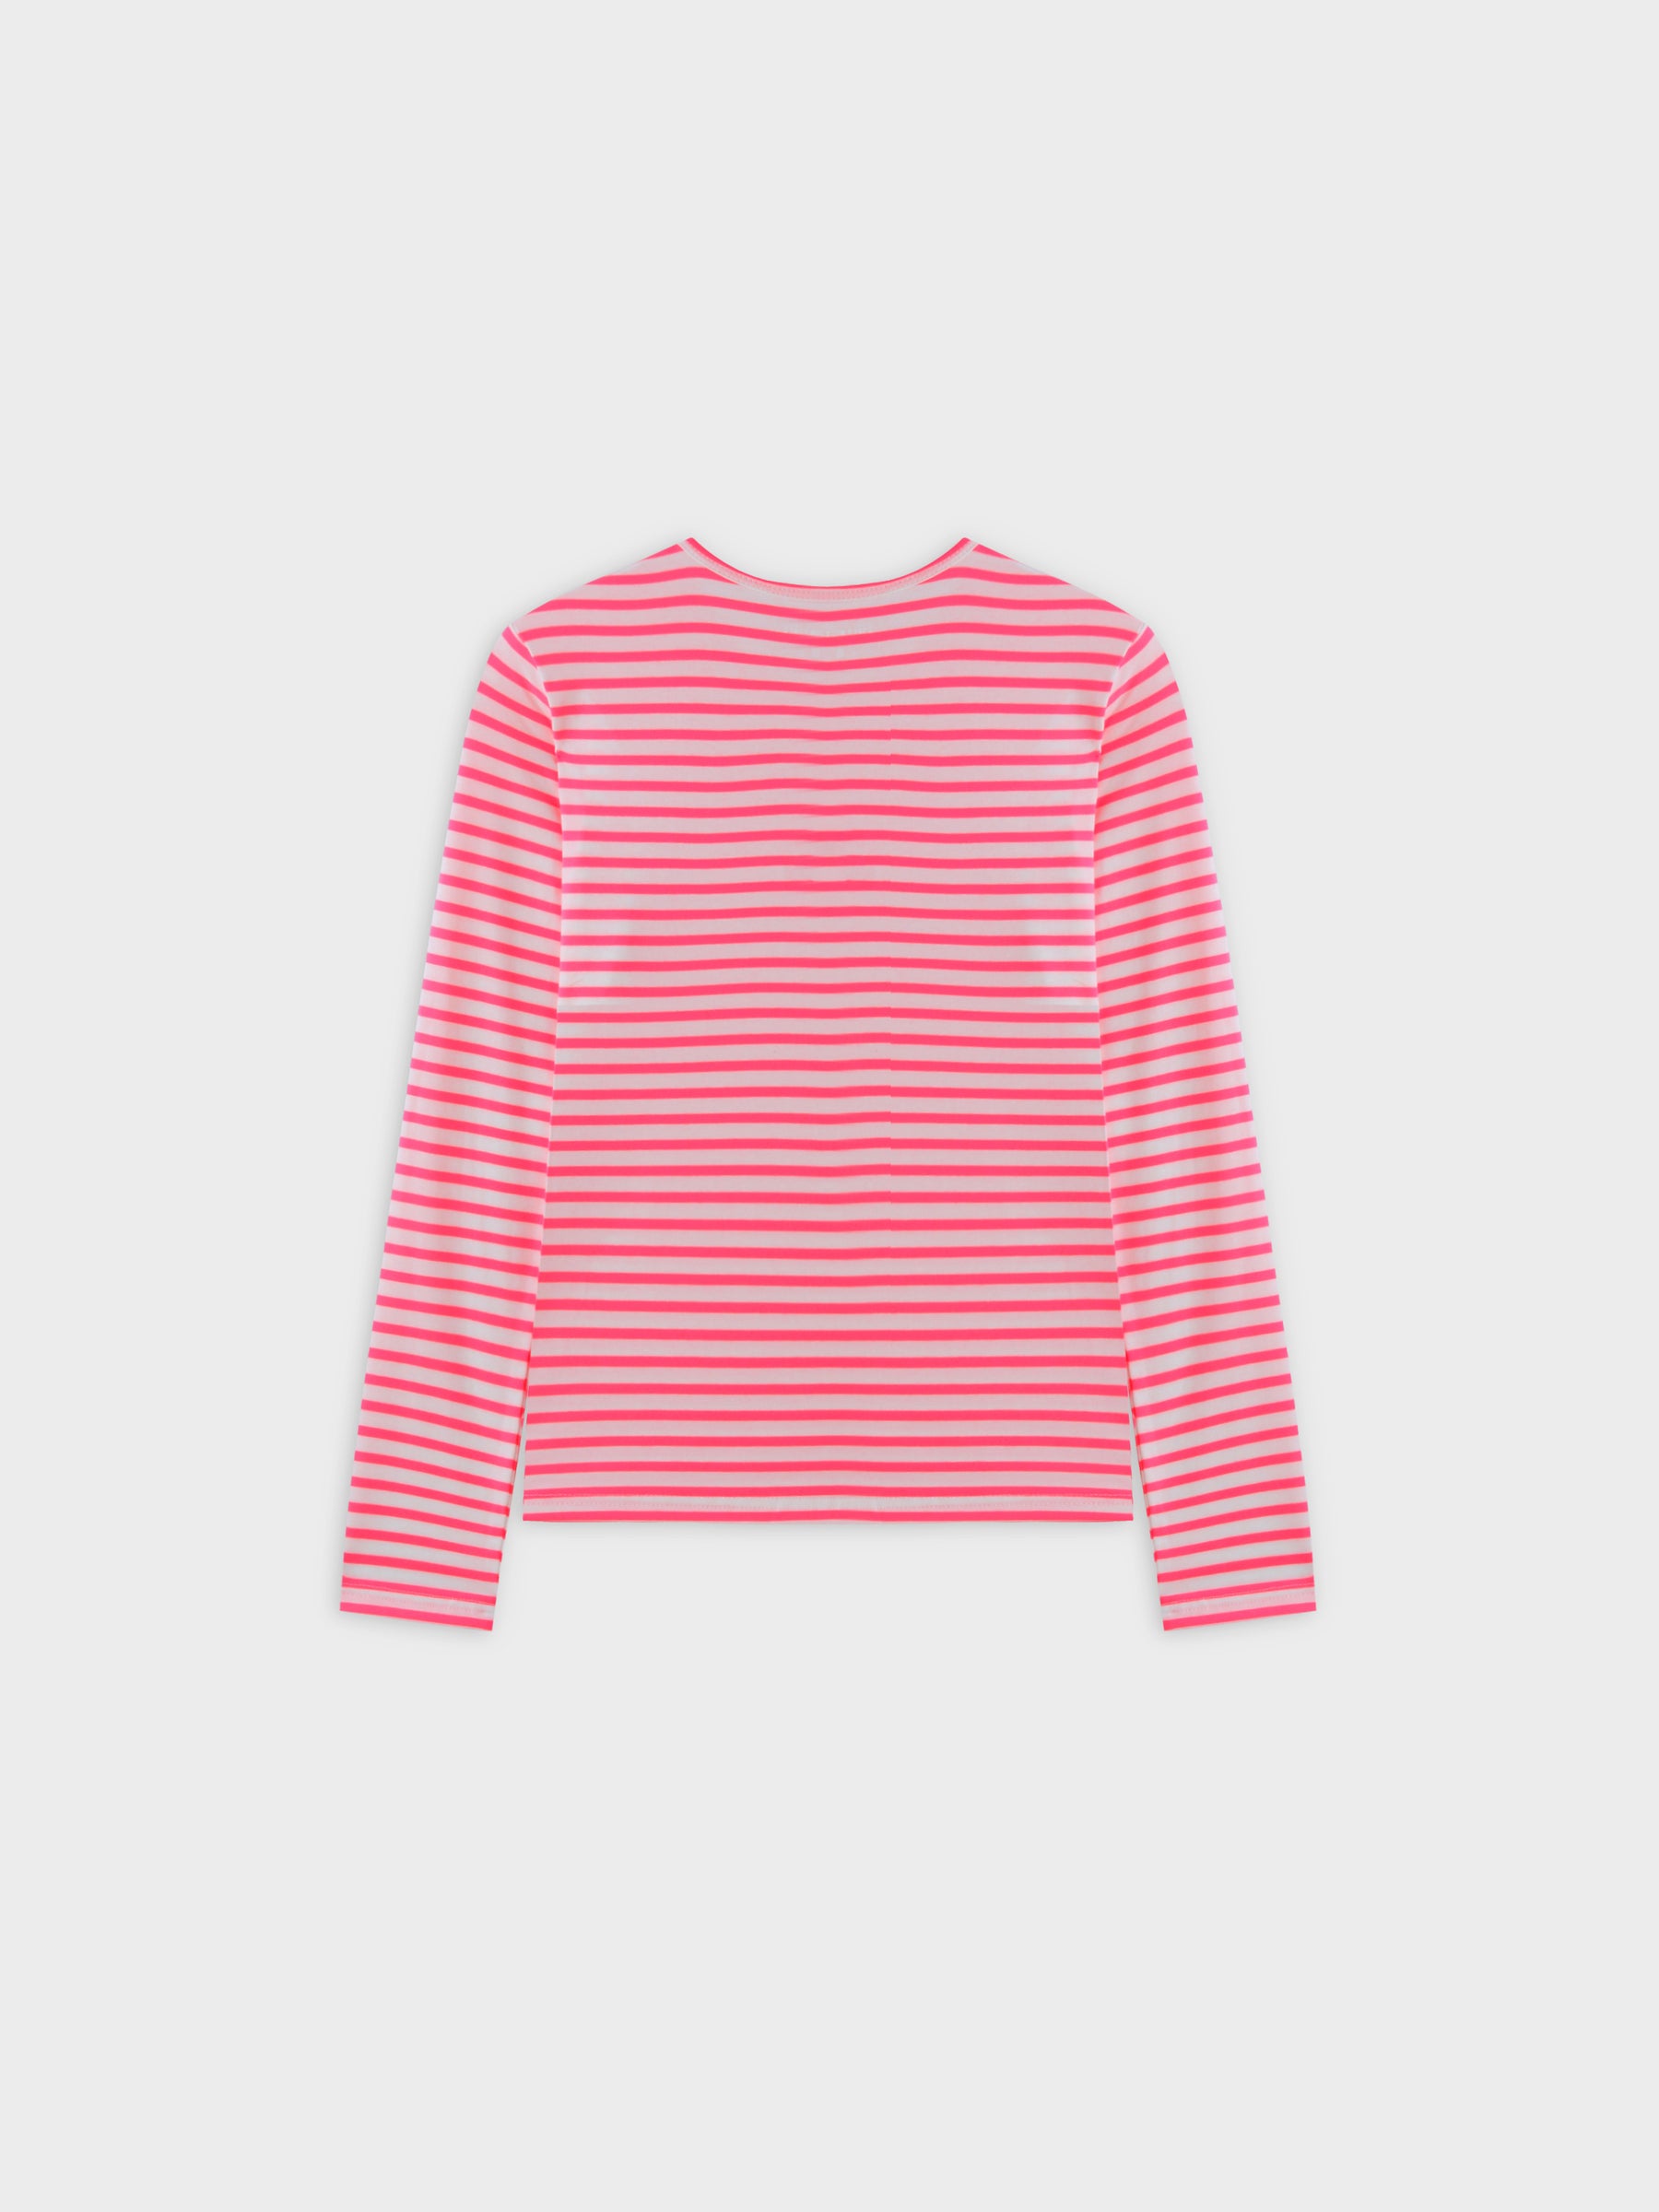 Camiseta con cuello redondo Neon Stripe-Rosa/Blanco